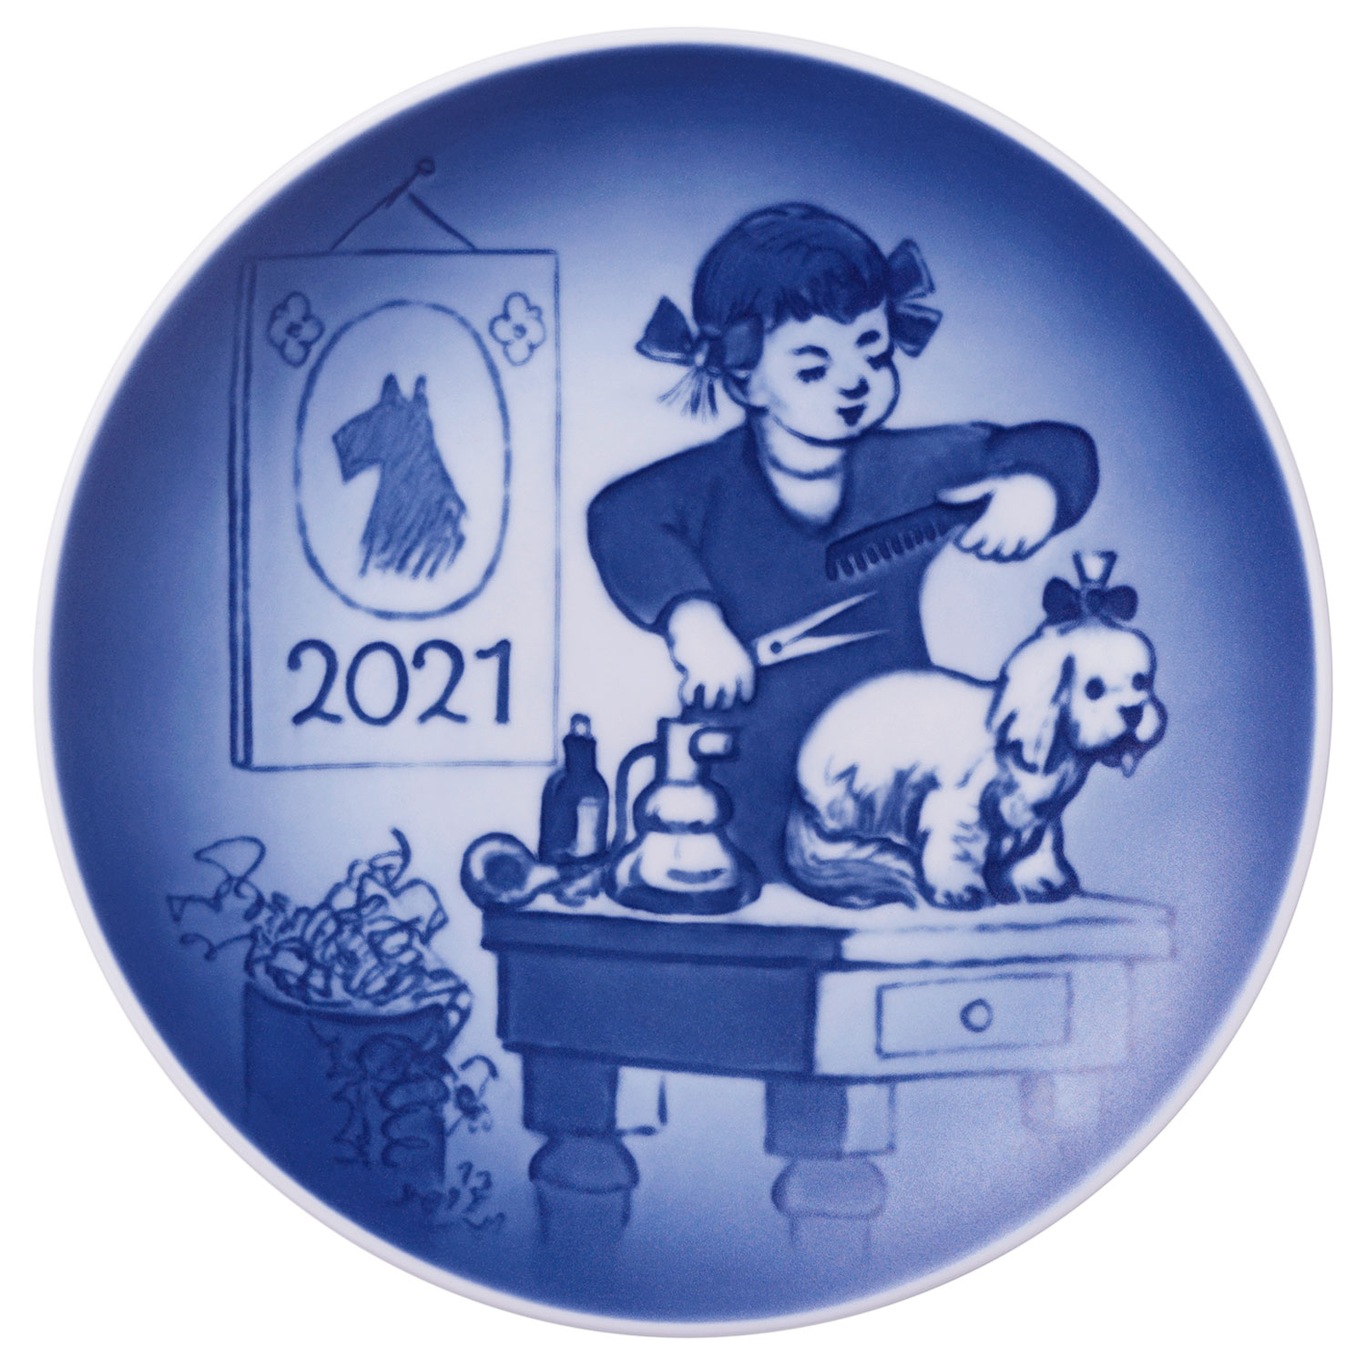 Bing & Grøndahl Child's Day Plate 2021 - The Little Dog Groomer